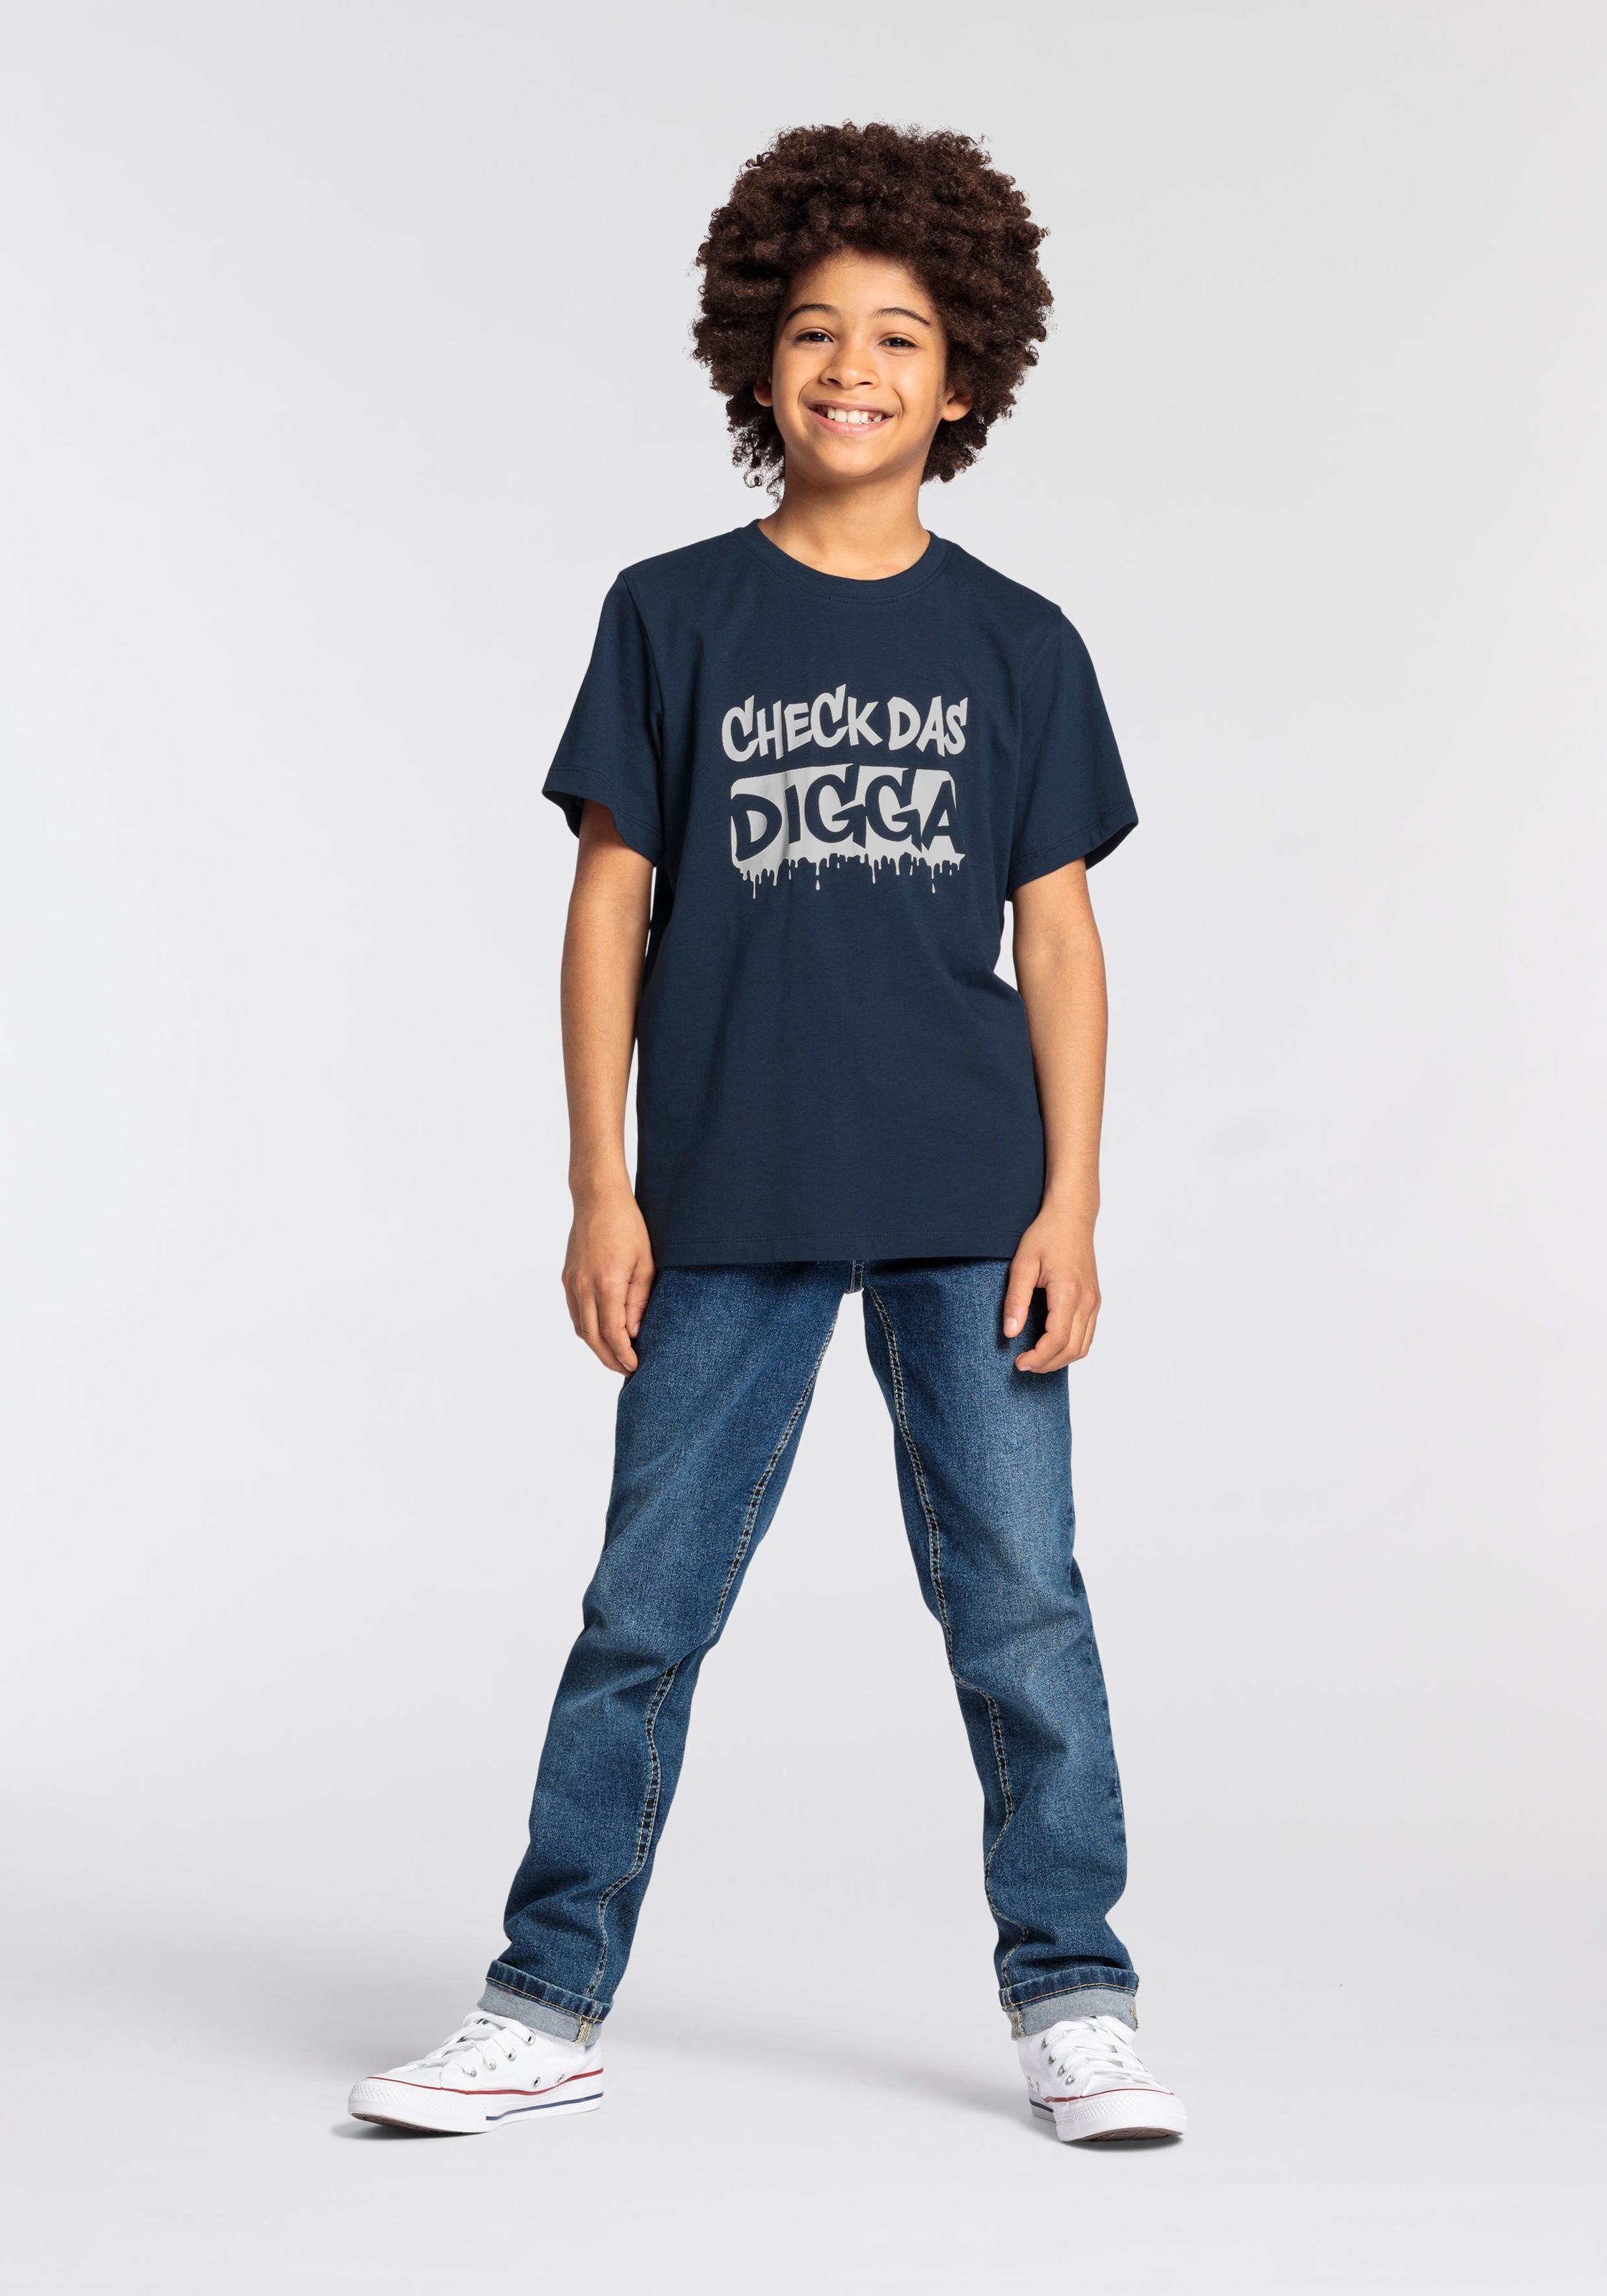 OTTO für DIGGA«, bei DAS Jungen »CHECK bestellen Sprücheshirt T-Shirt KIDSWORLD